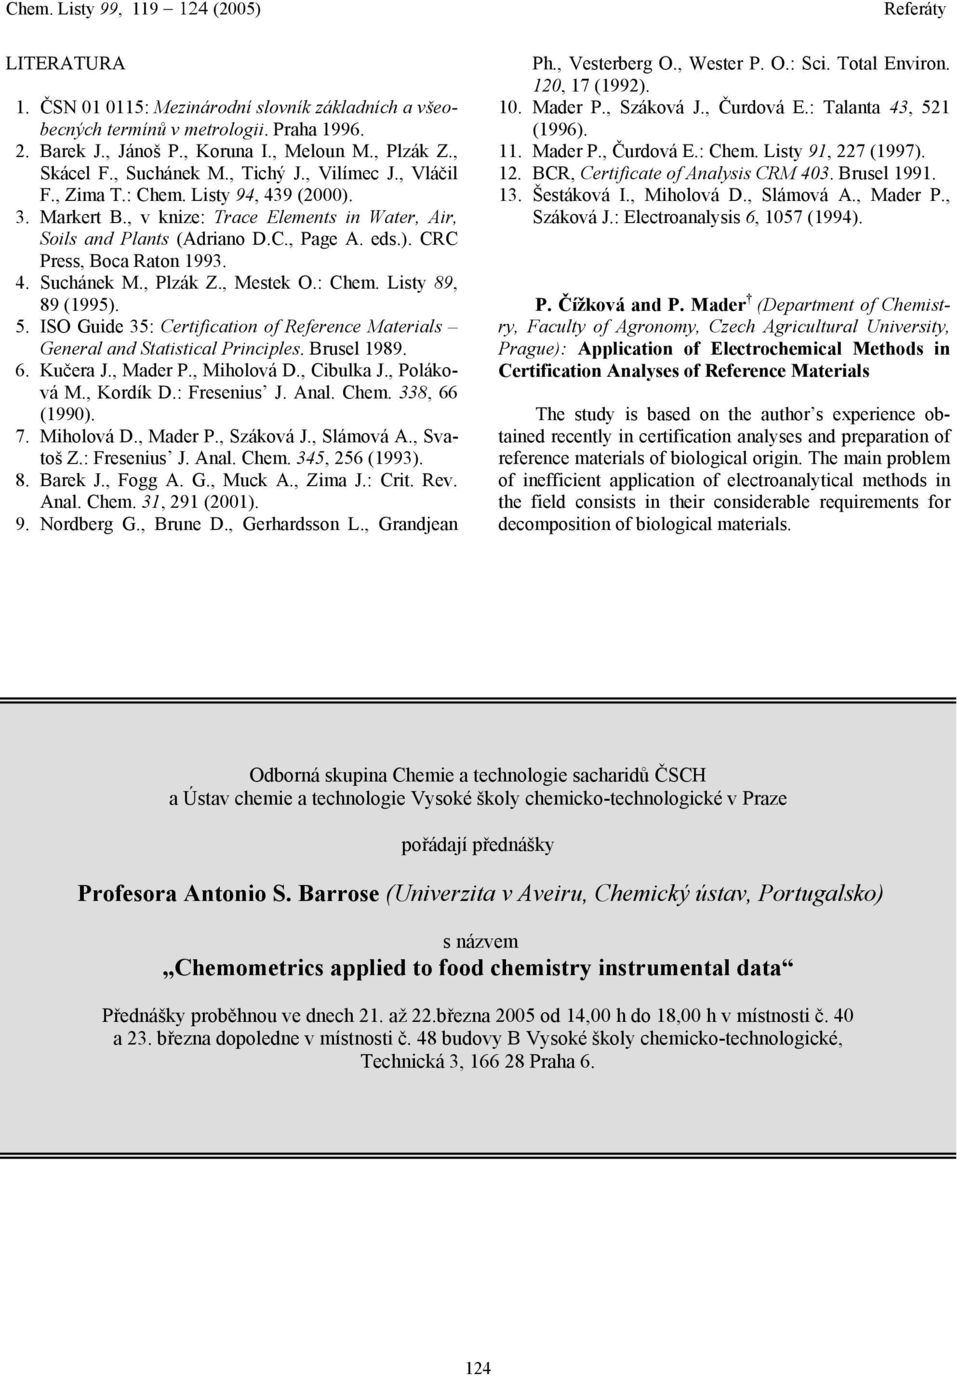 , Plzák Z., Mestek O.: Chem. Listy 89, 89 (1995). 5. ISO Guide 35: Certification of Reference Materials General and Statistical Principles. Brusel 1989. 6. Kučera J., Mader P., Miholová D., Cibulka J.